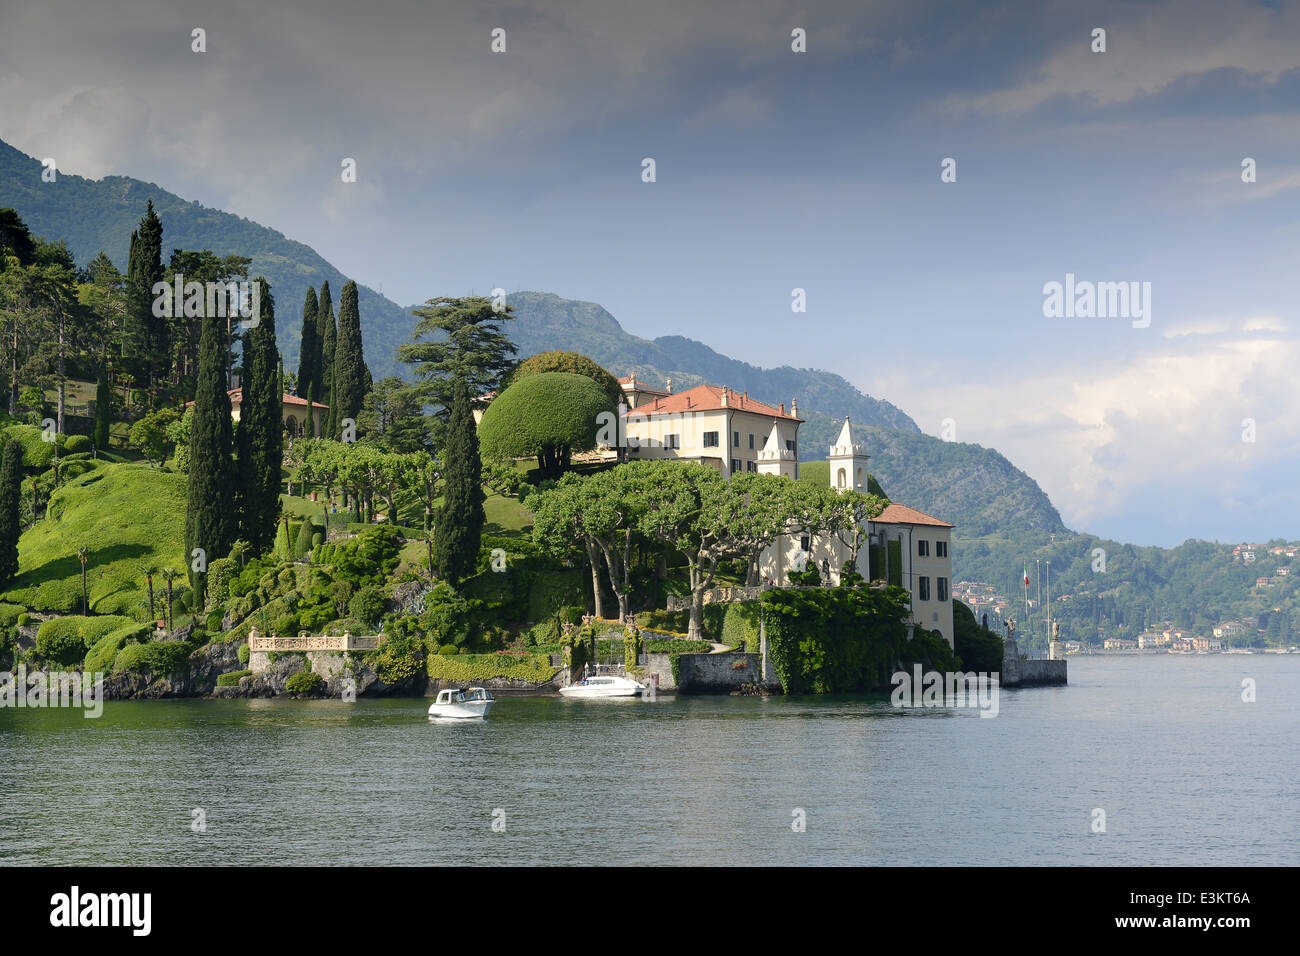 Villa Balbianello, Lenno, Lake Como, Italy Stock Photo